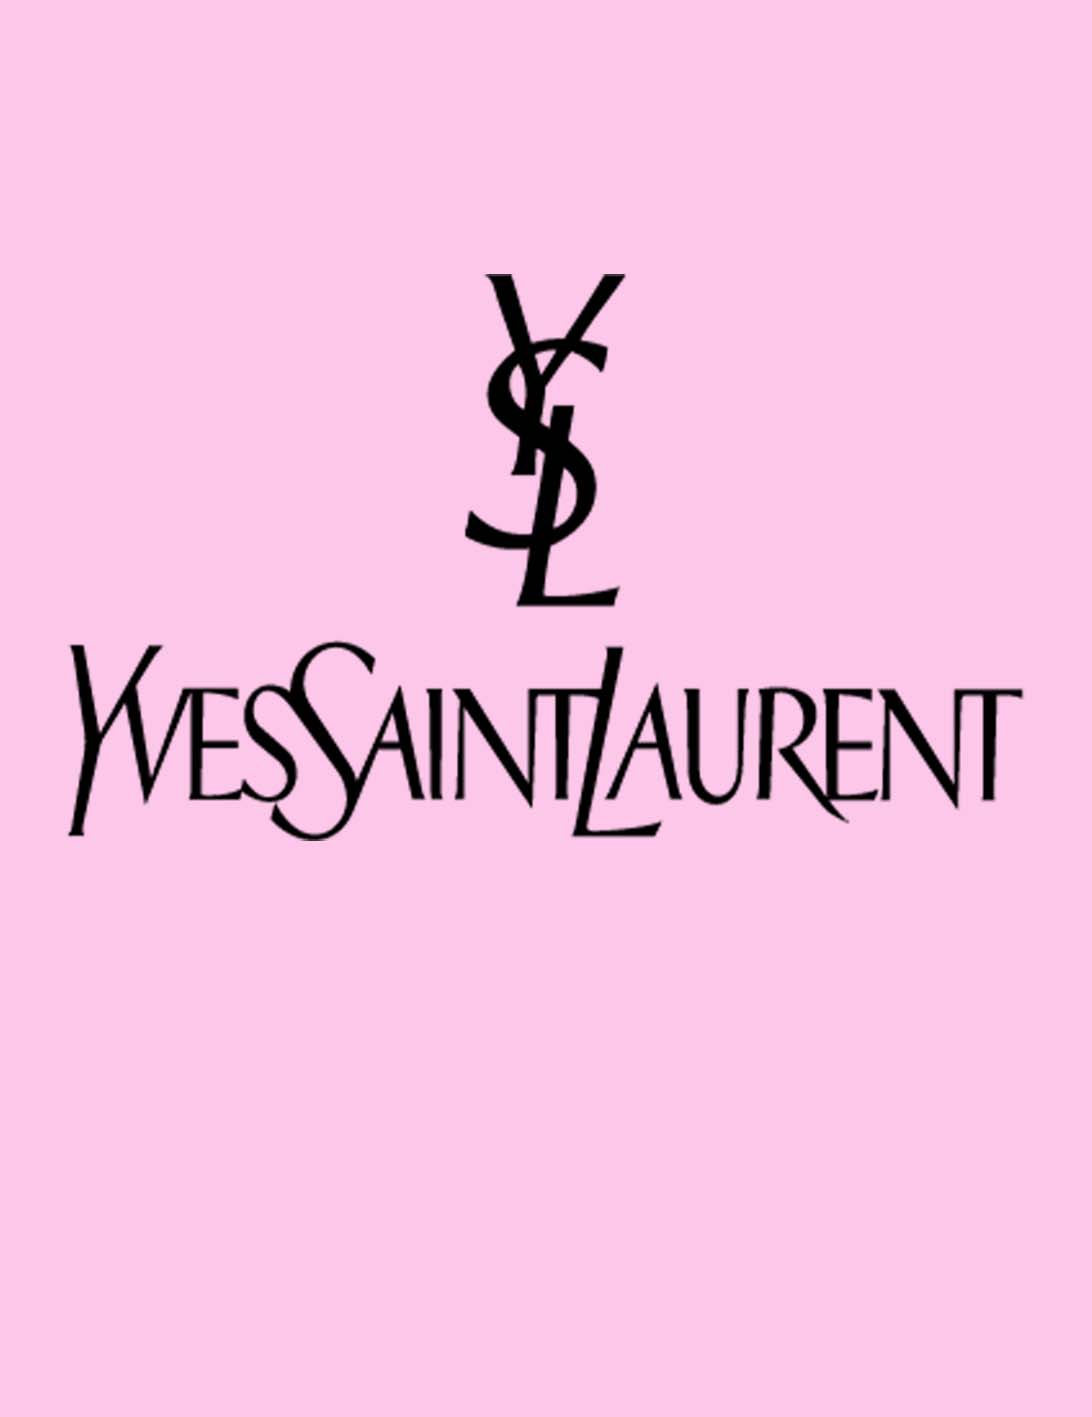 بنر برند عطر ایو سن لورن عجمان عطر Yves Saint Laurent perfume ajmanatr